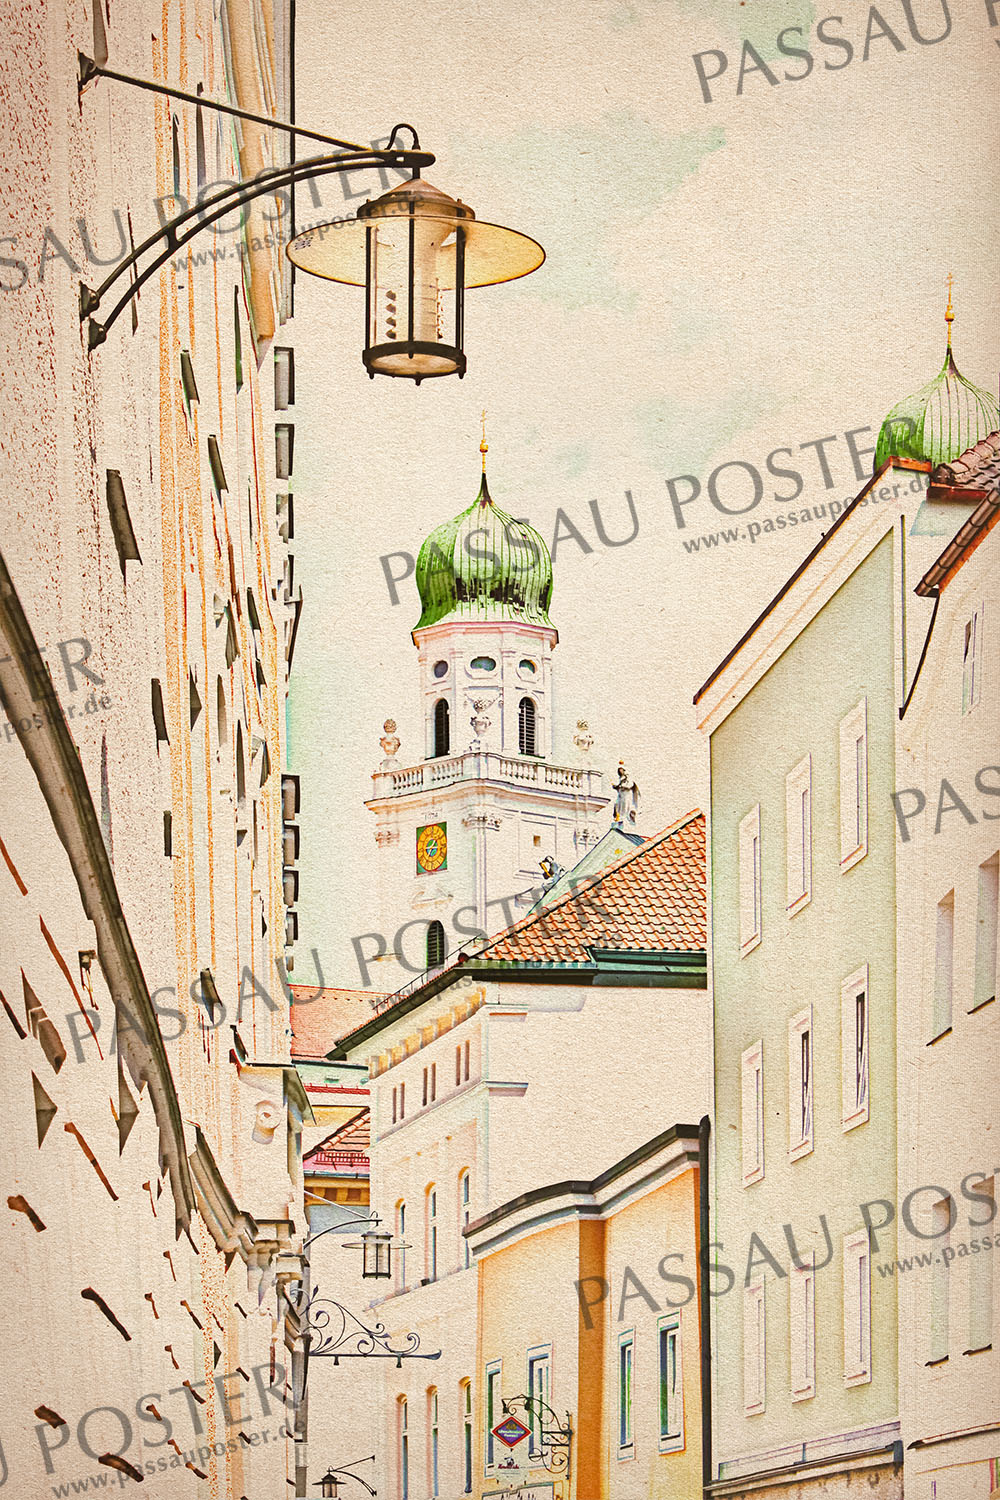 Passau Poster - Passauer Herz der Stadt